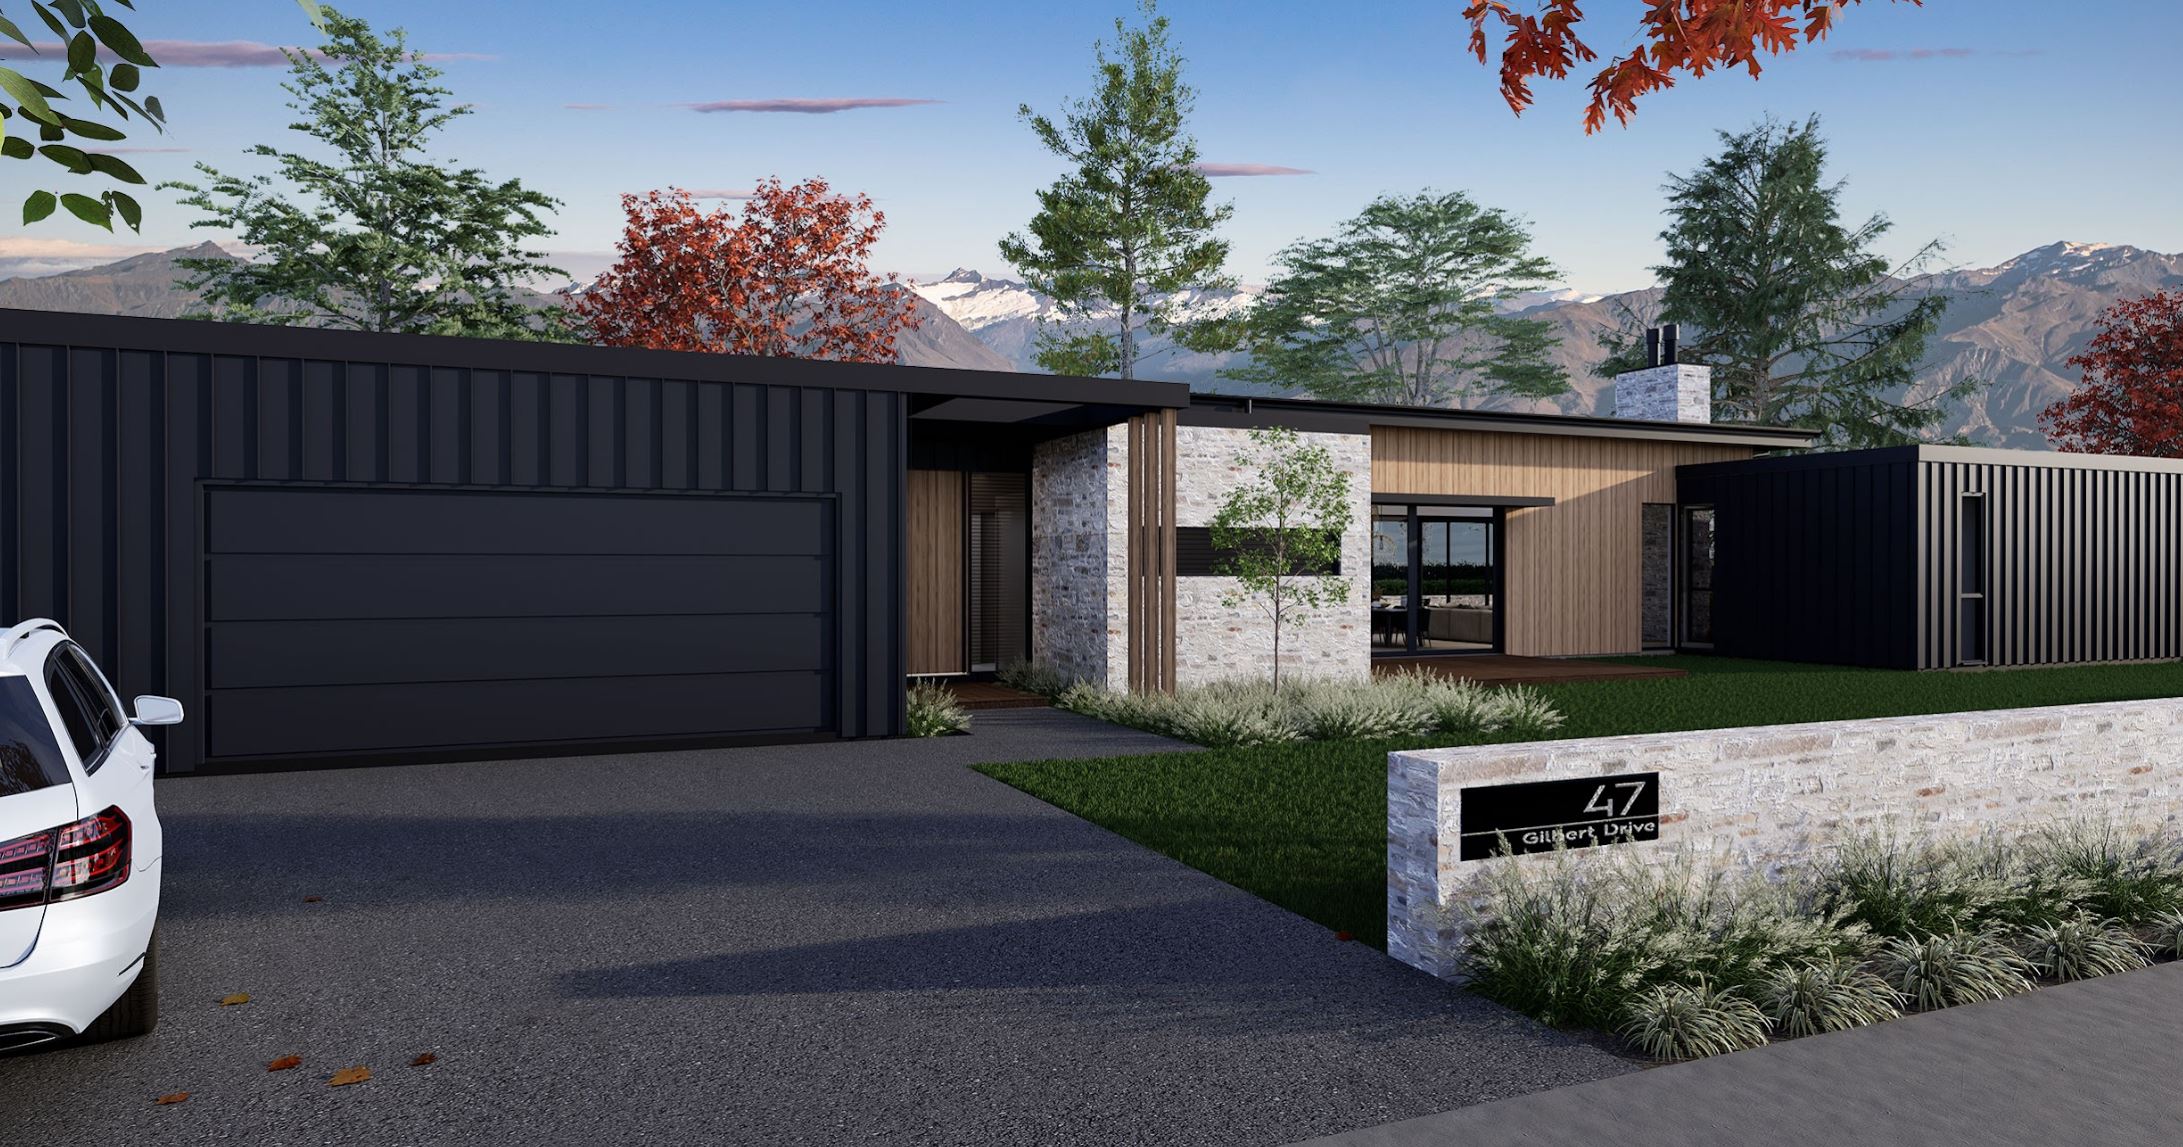 Hallmark Homes Prestige Series Mackenzie House Floor Plan Front View Christchurch NZ.